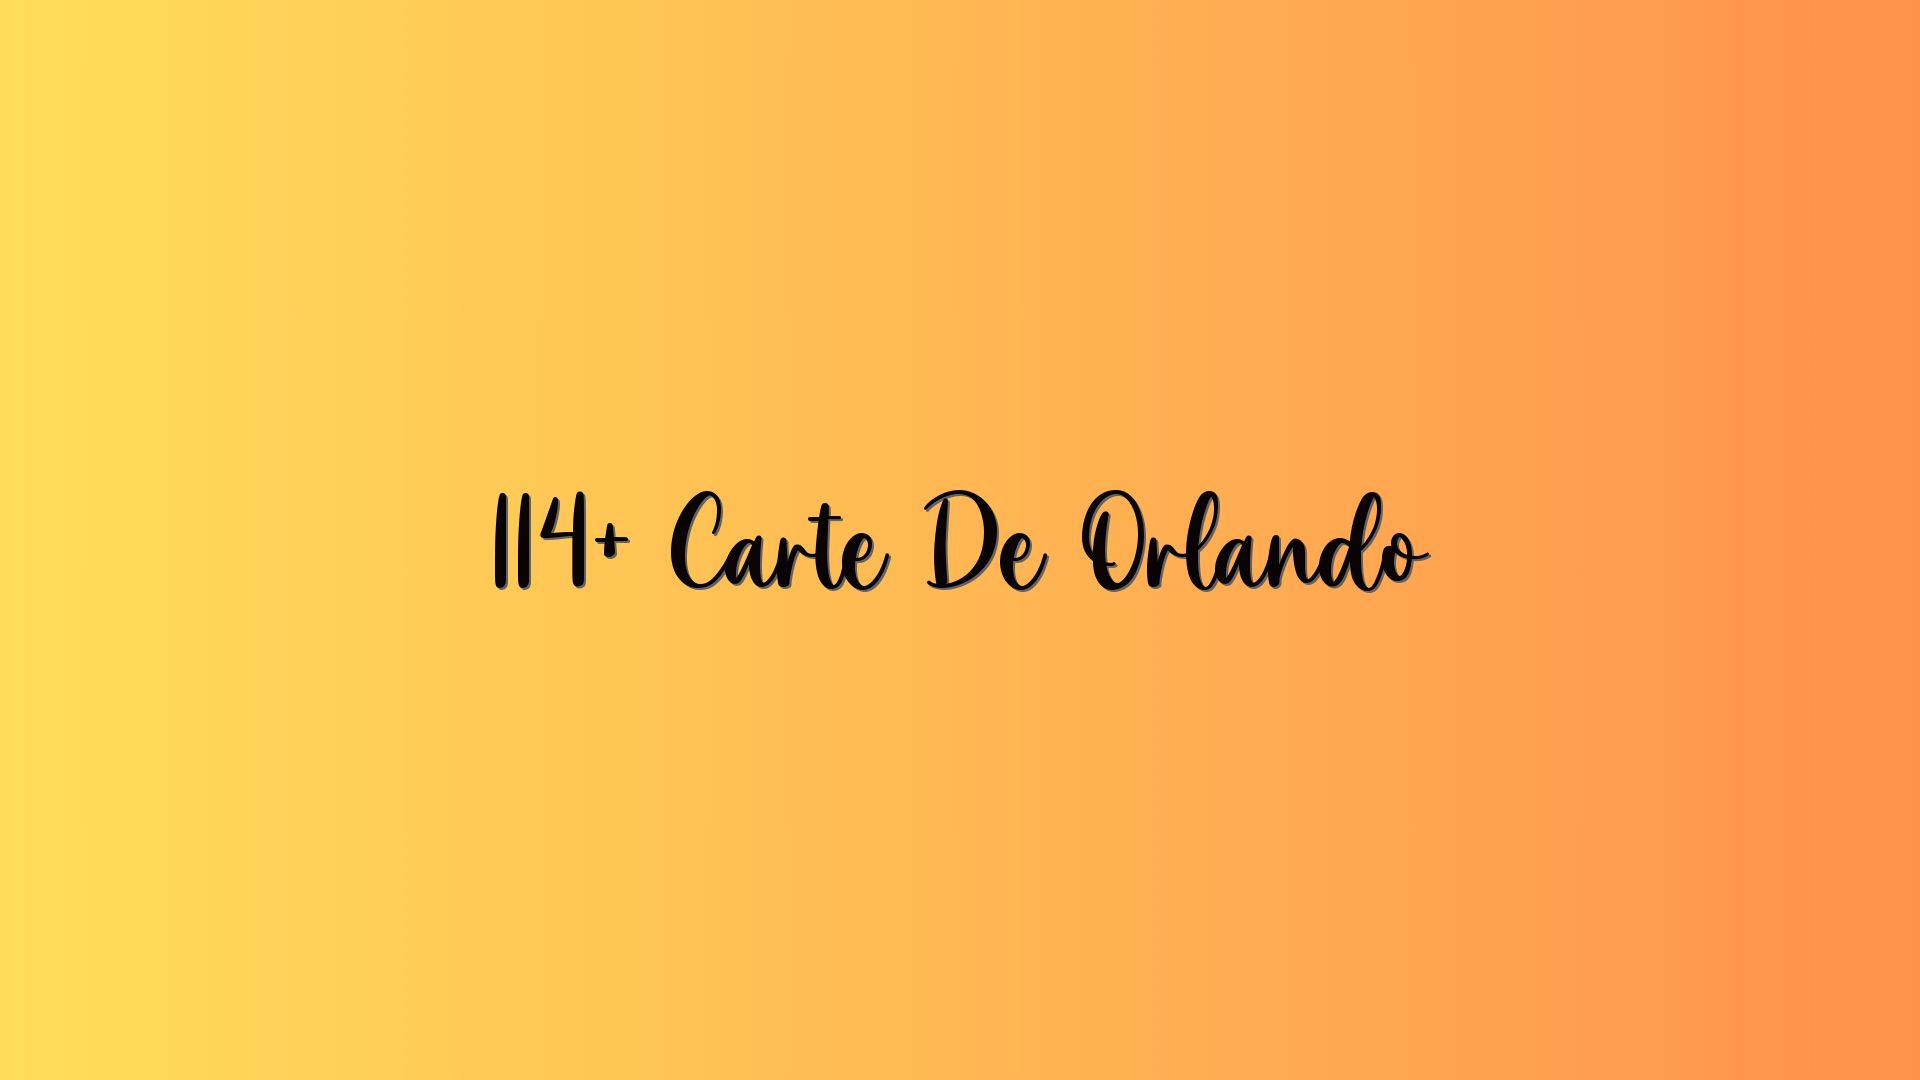 114+ Carte De Orlando